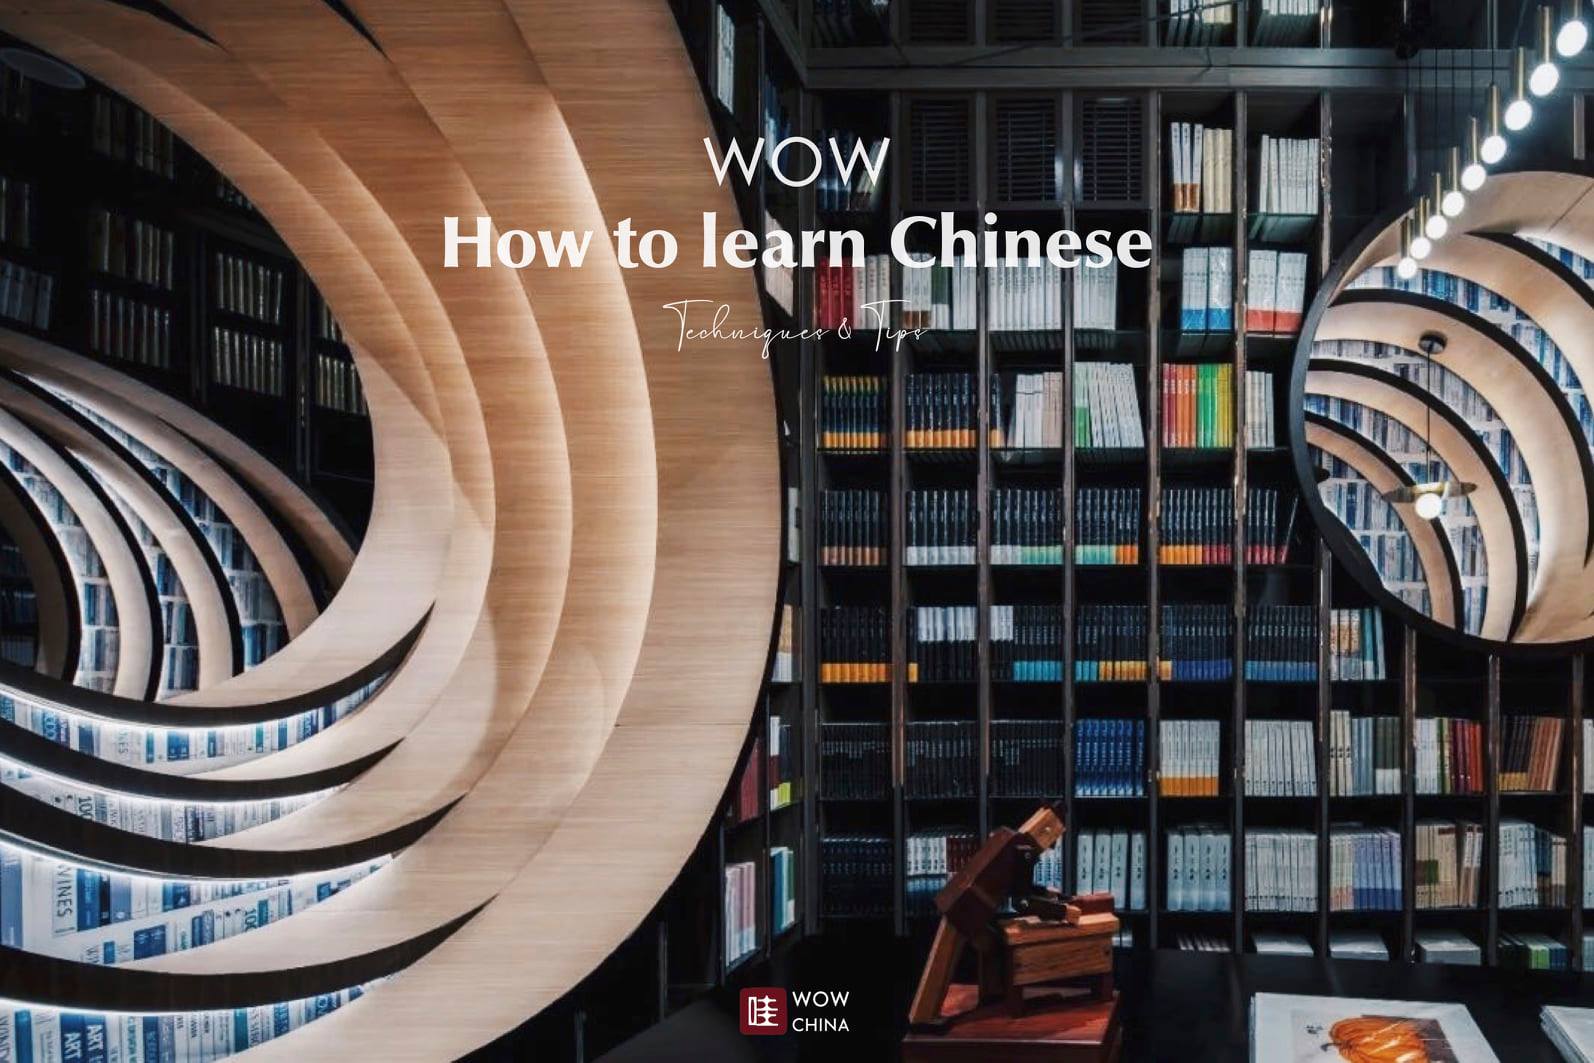 เผยเคล็ดลับการเรียนภาษาจีนที่ไม่ลับของแอดมิน #WOWCHINA
และ 10 แอปพลิเคชั่นเรียนจ…